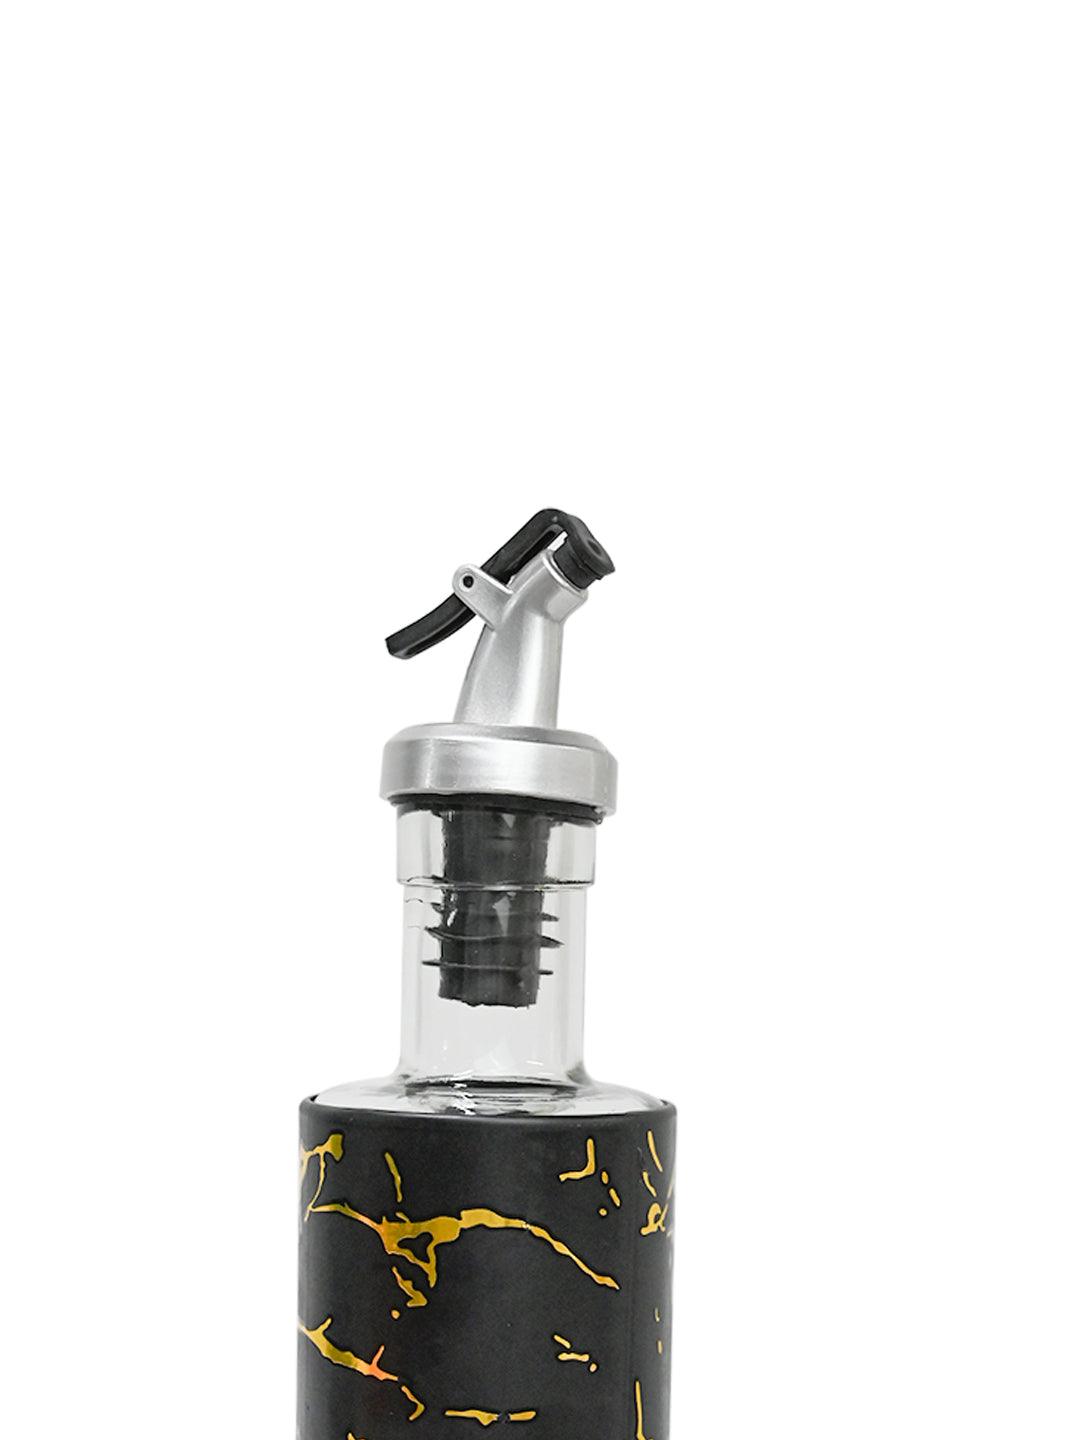 https://market99.com/cdn/shop/files/marble-oil-dispenser-250ml-black-oil-and-vinegar-dispensers-4_2048x.jpg?v=1697016599